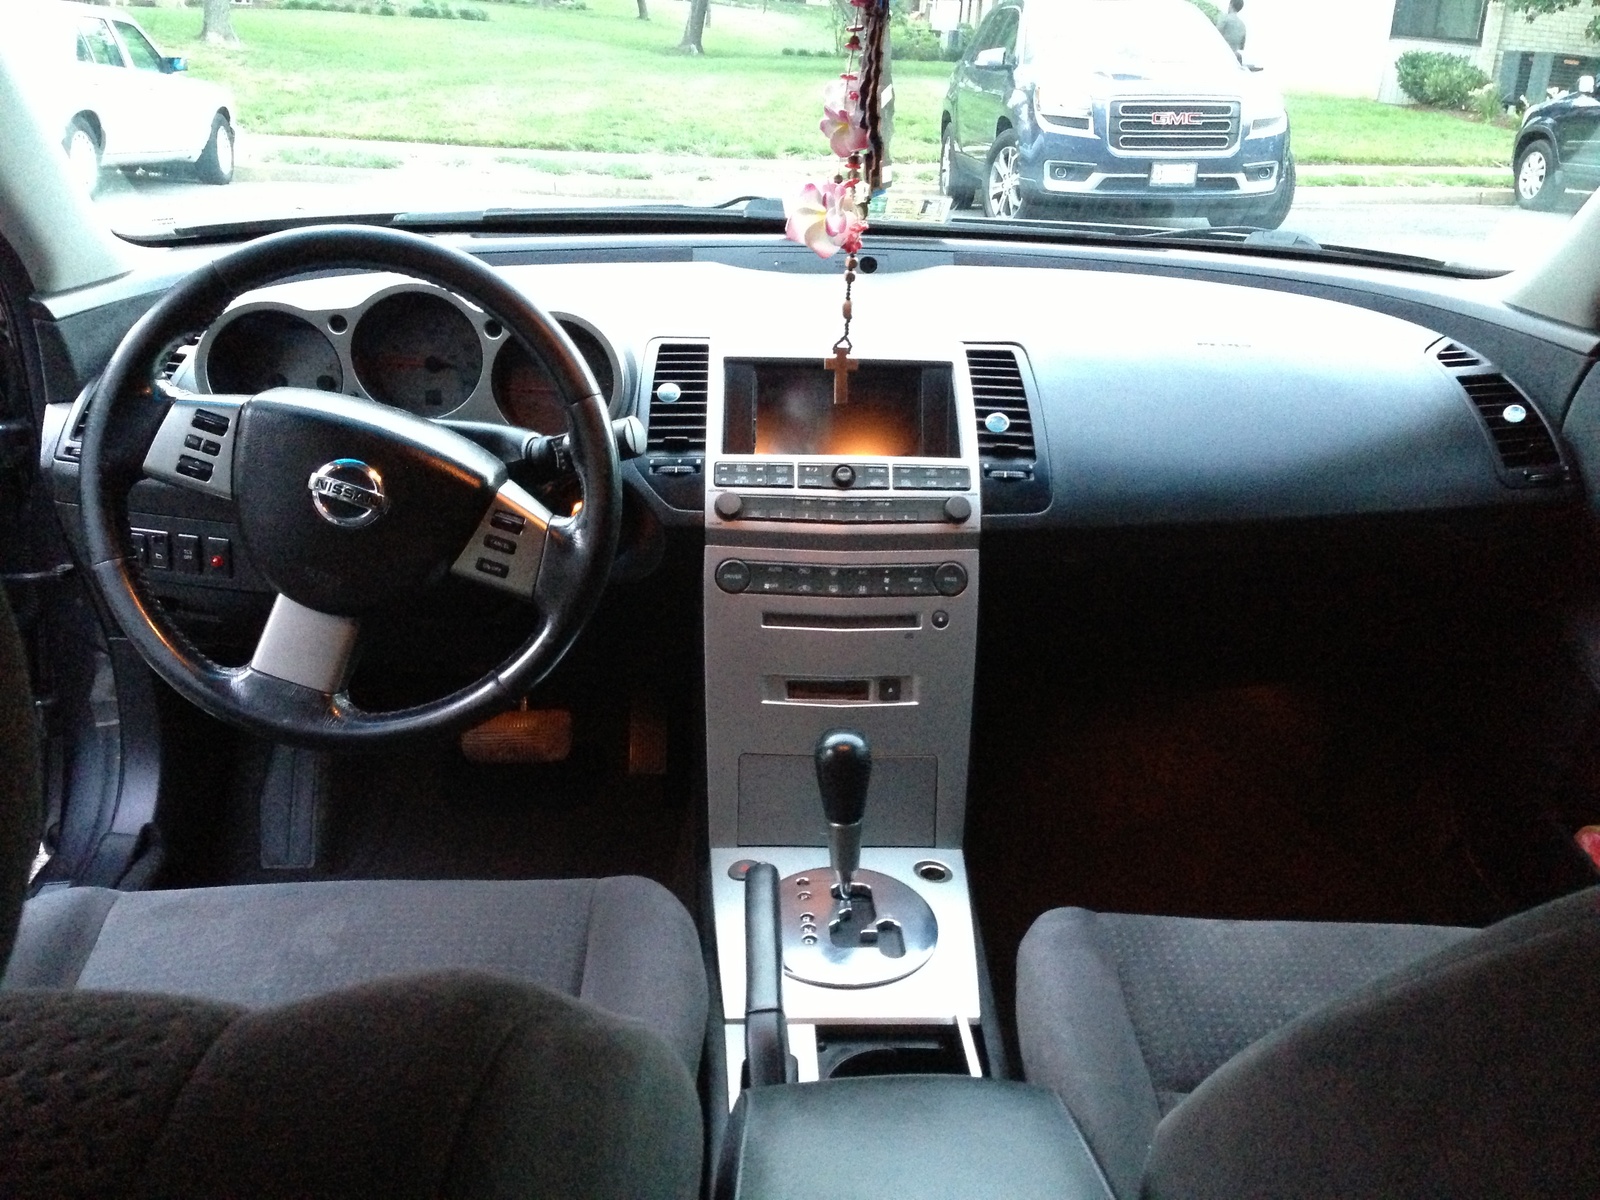 2006 Nissan maxima interior parts